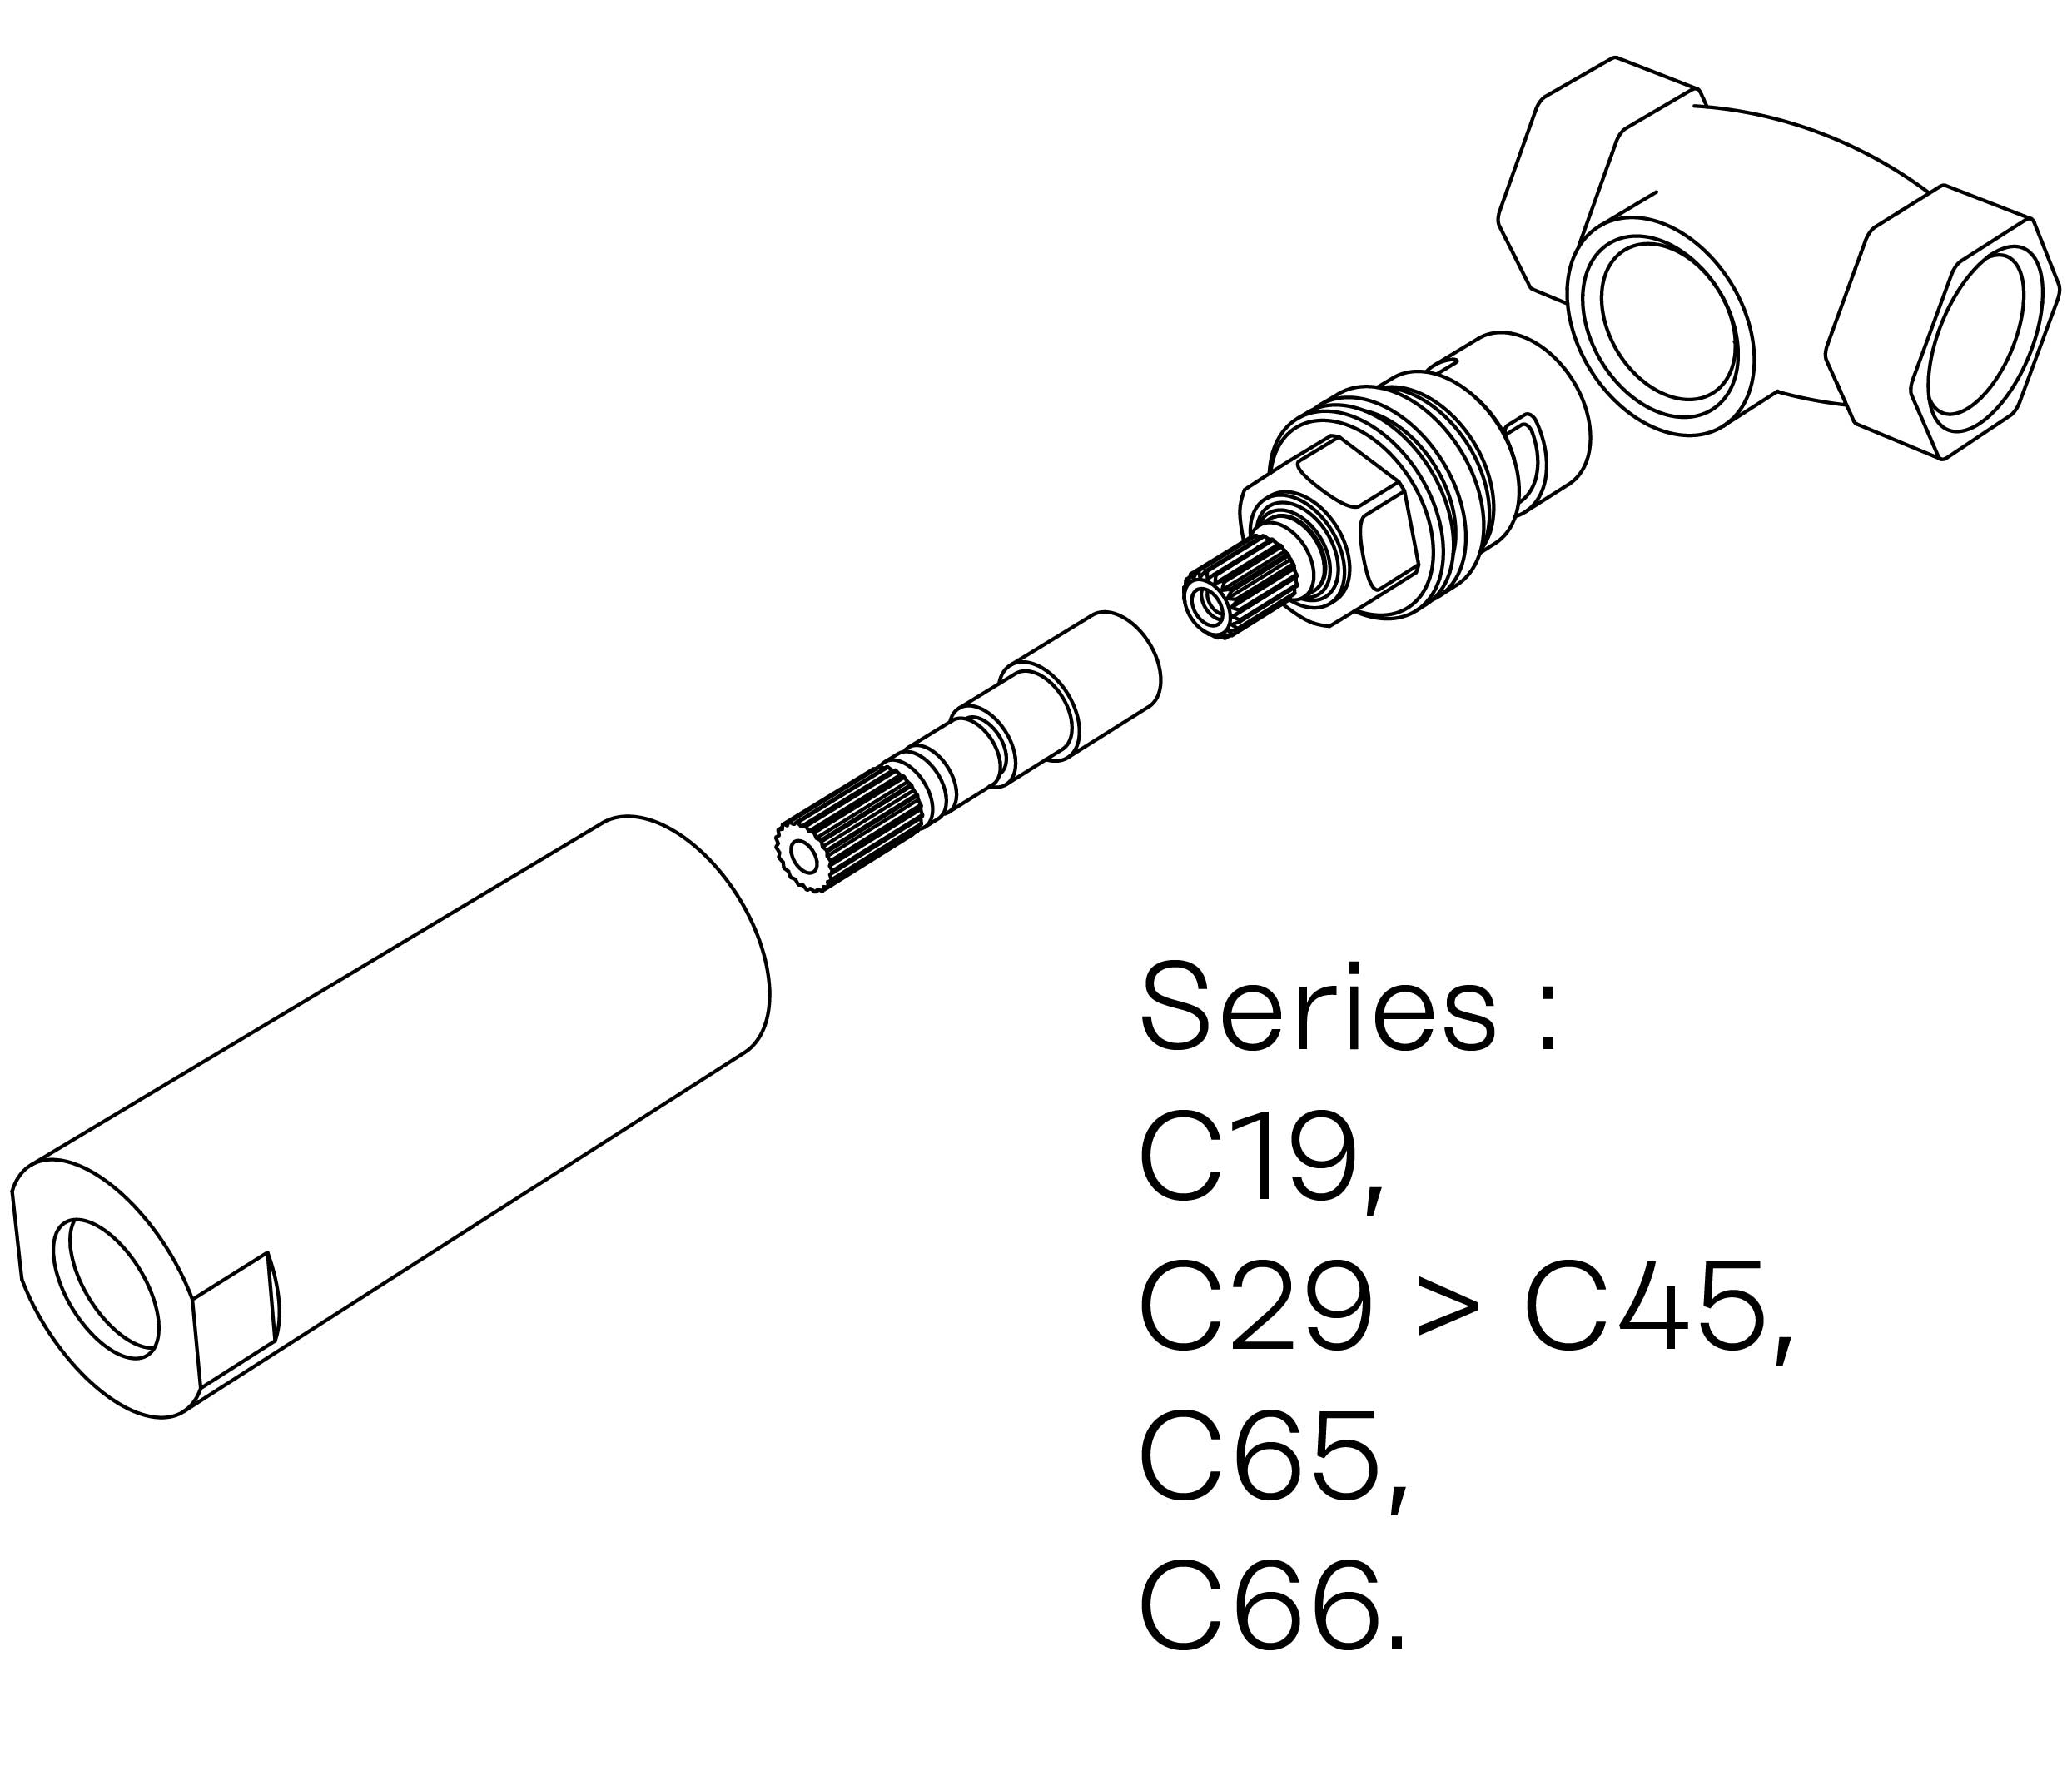 C00-23K29C Kit #3 for W-M valve 3/4″, 1/4 turn, Right